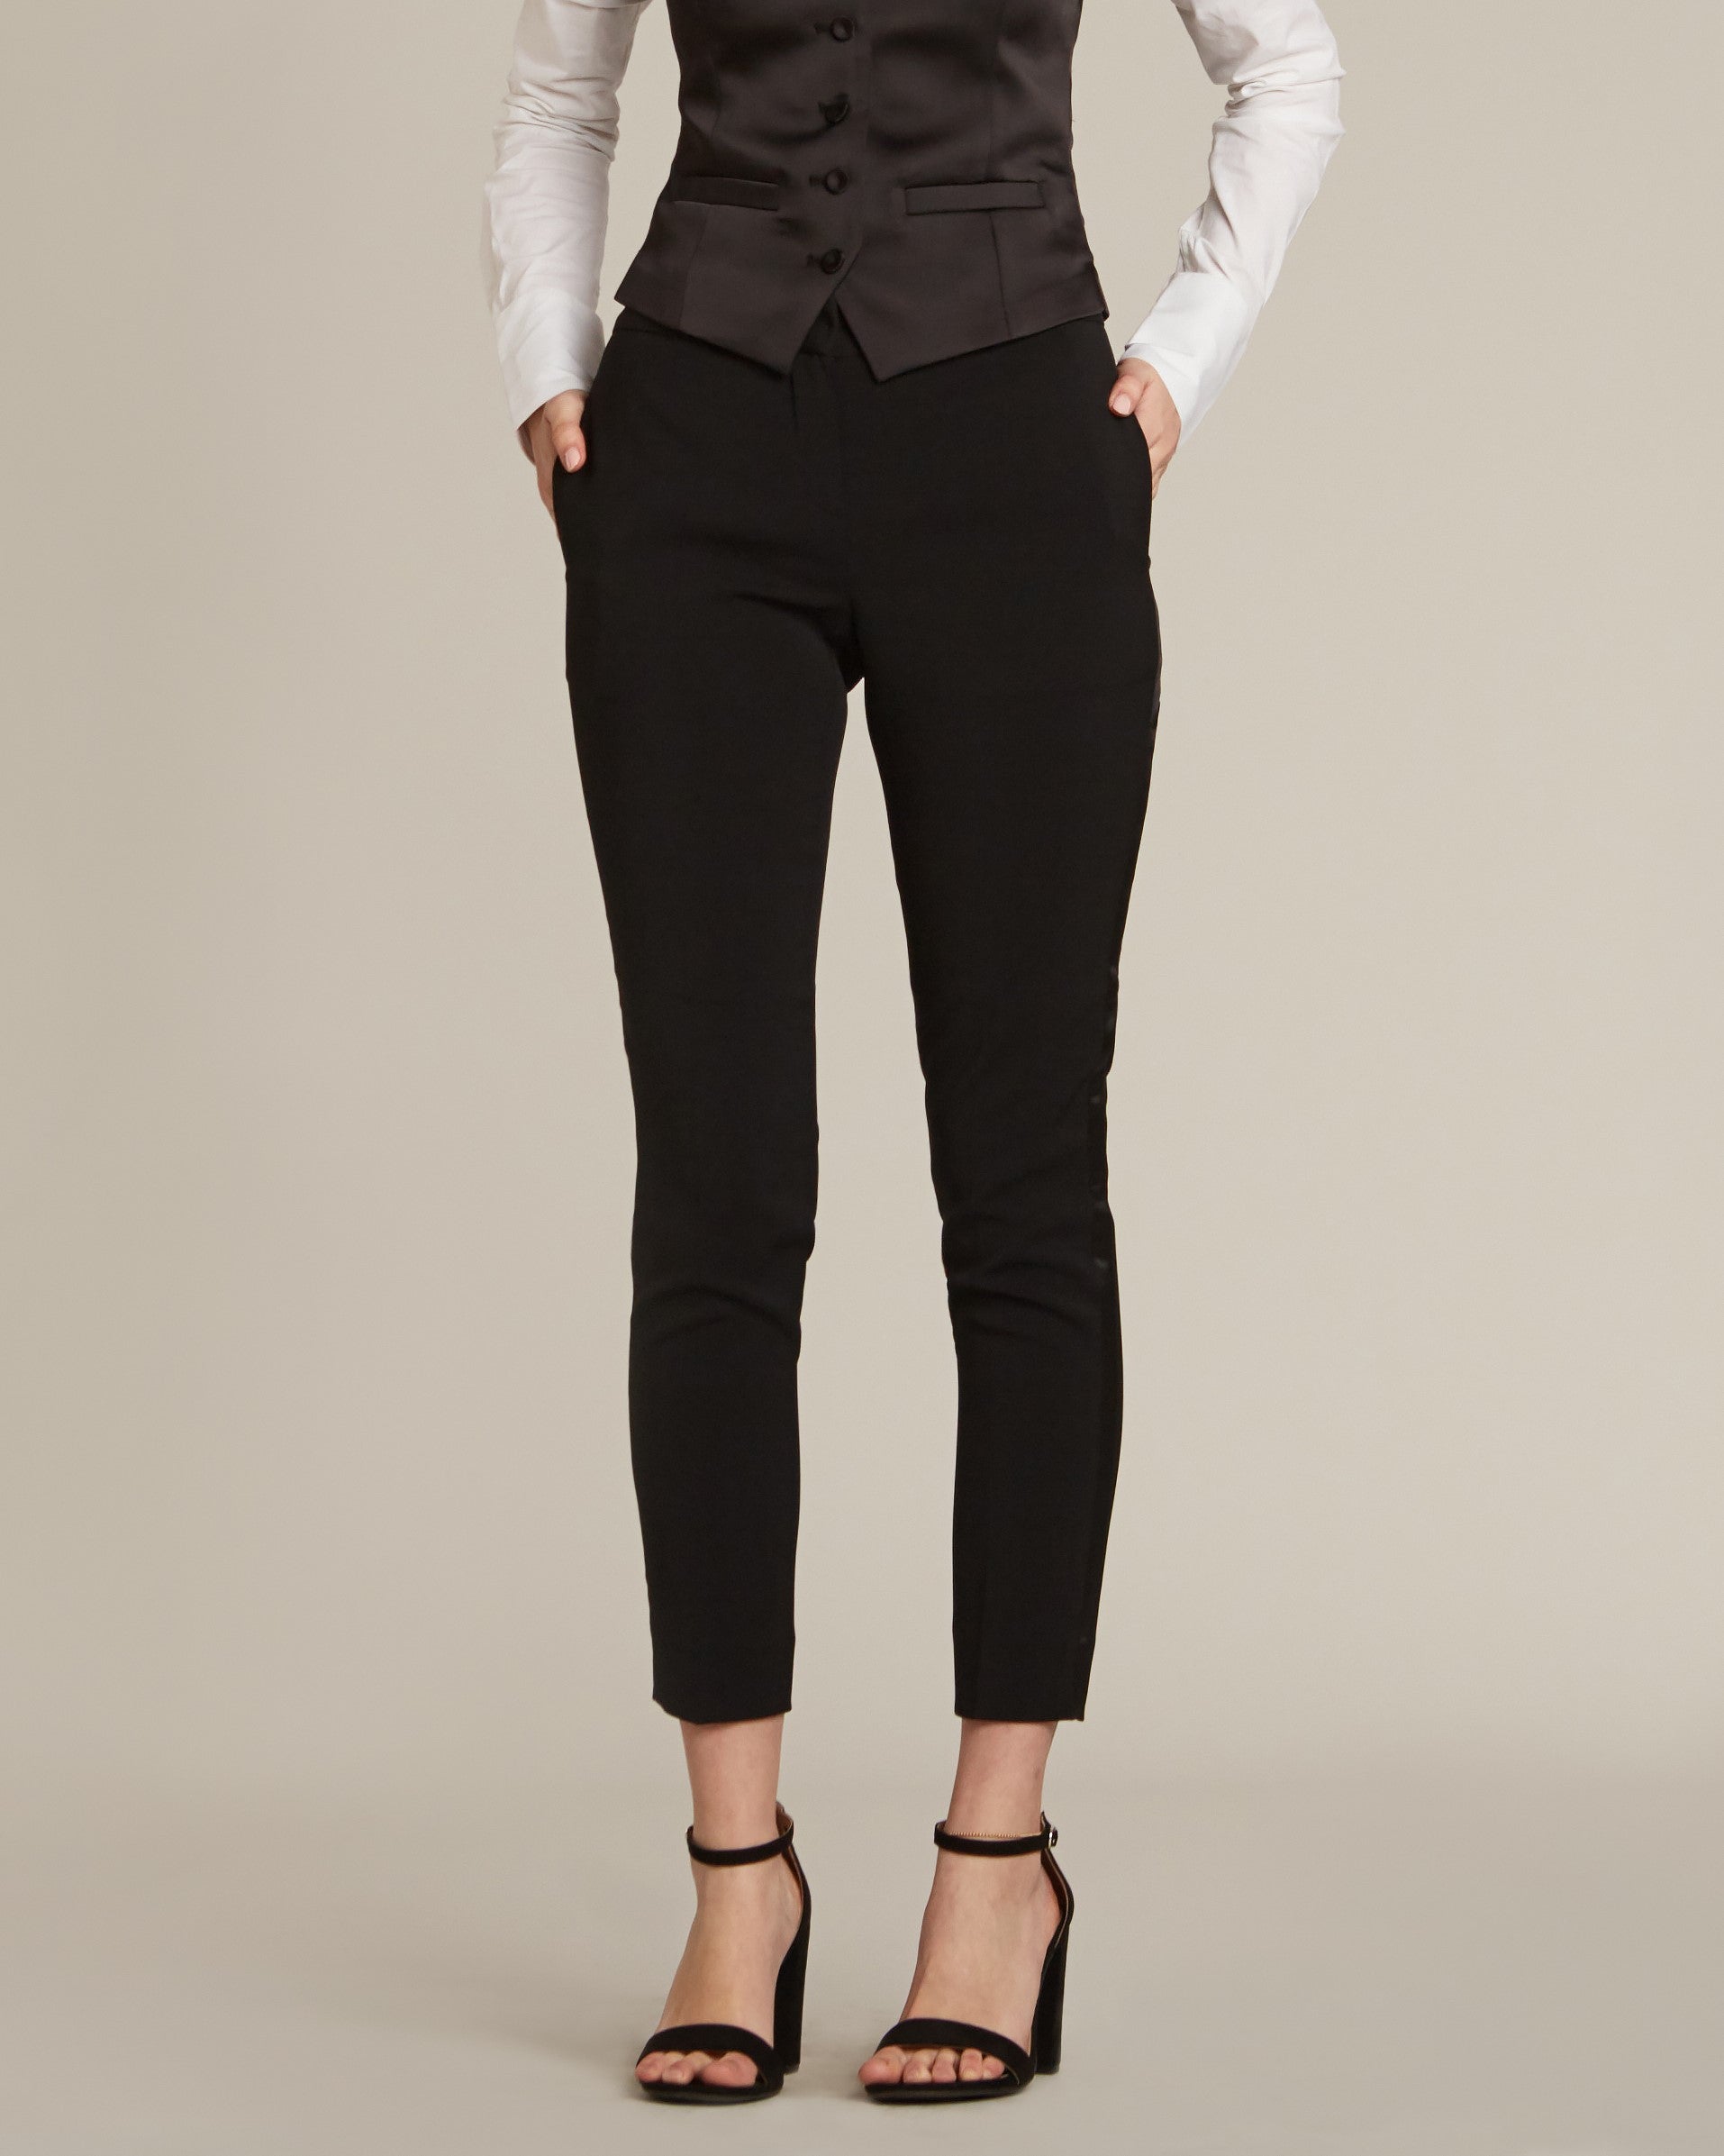 Buy Vie Ladies Slim Fit Black Jeans Online - Lulu Hypermarket India